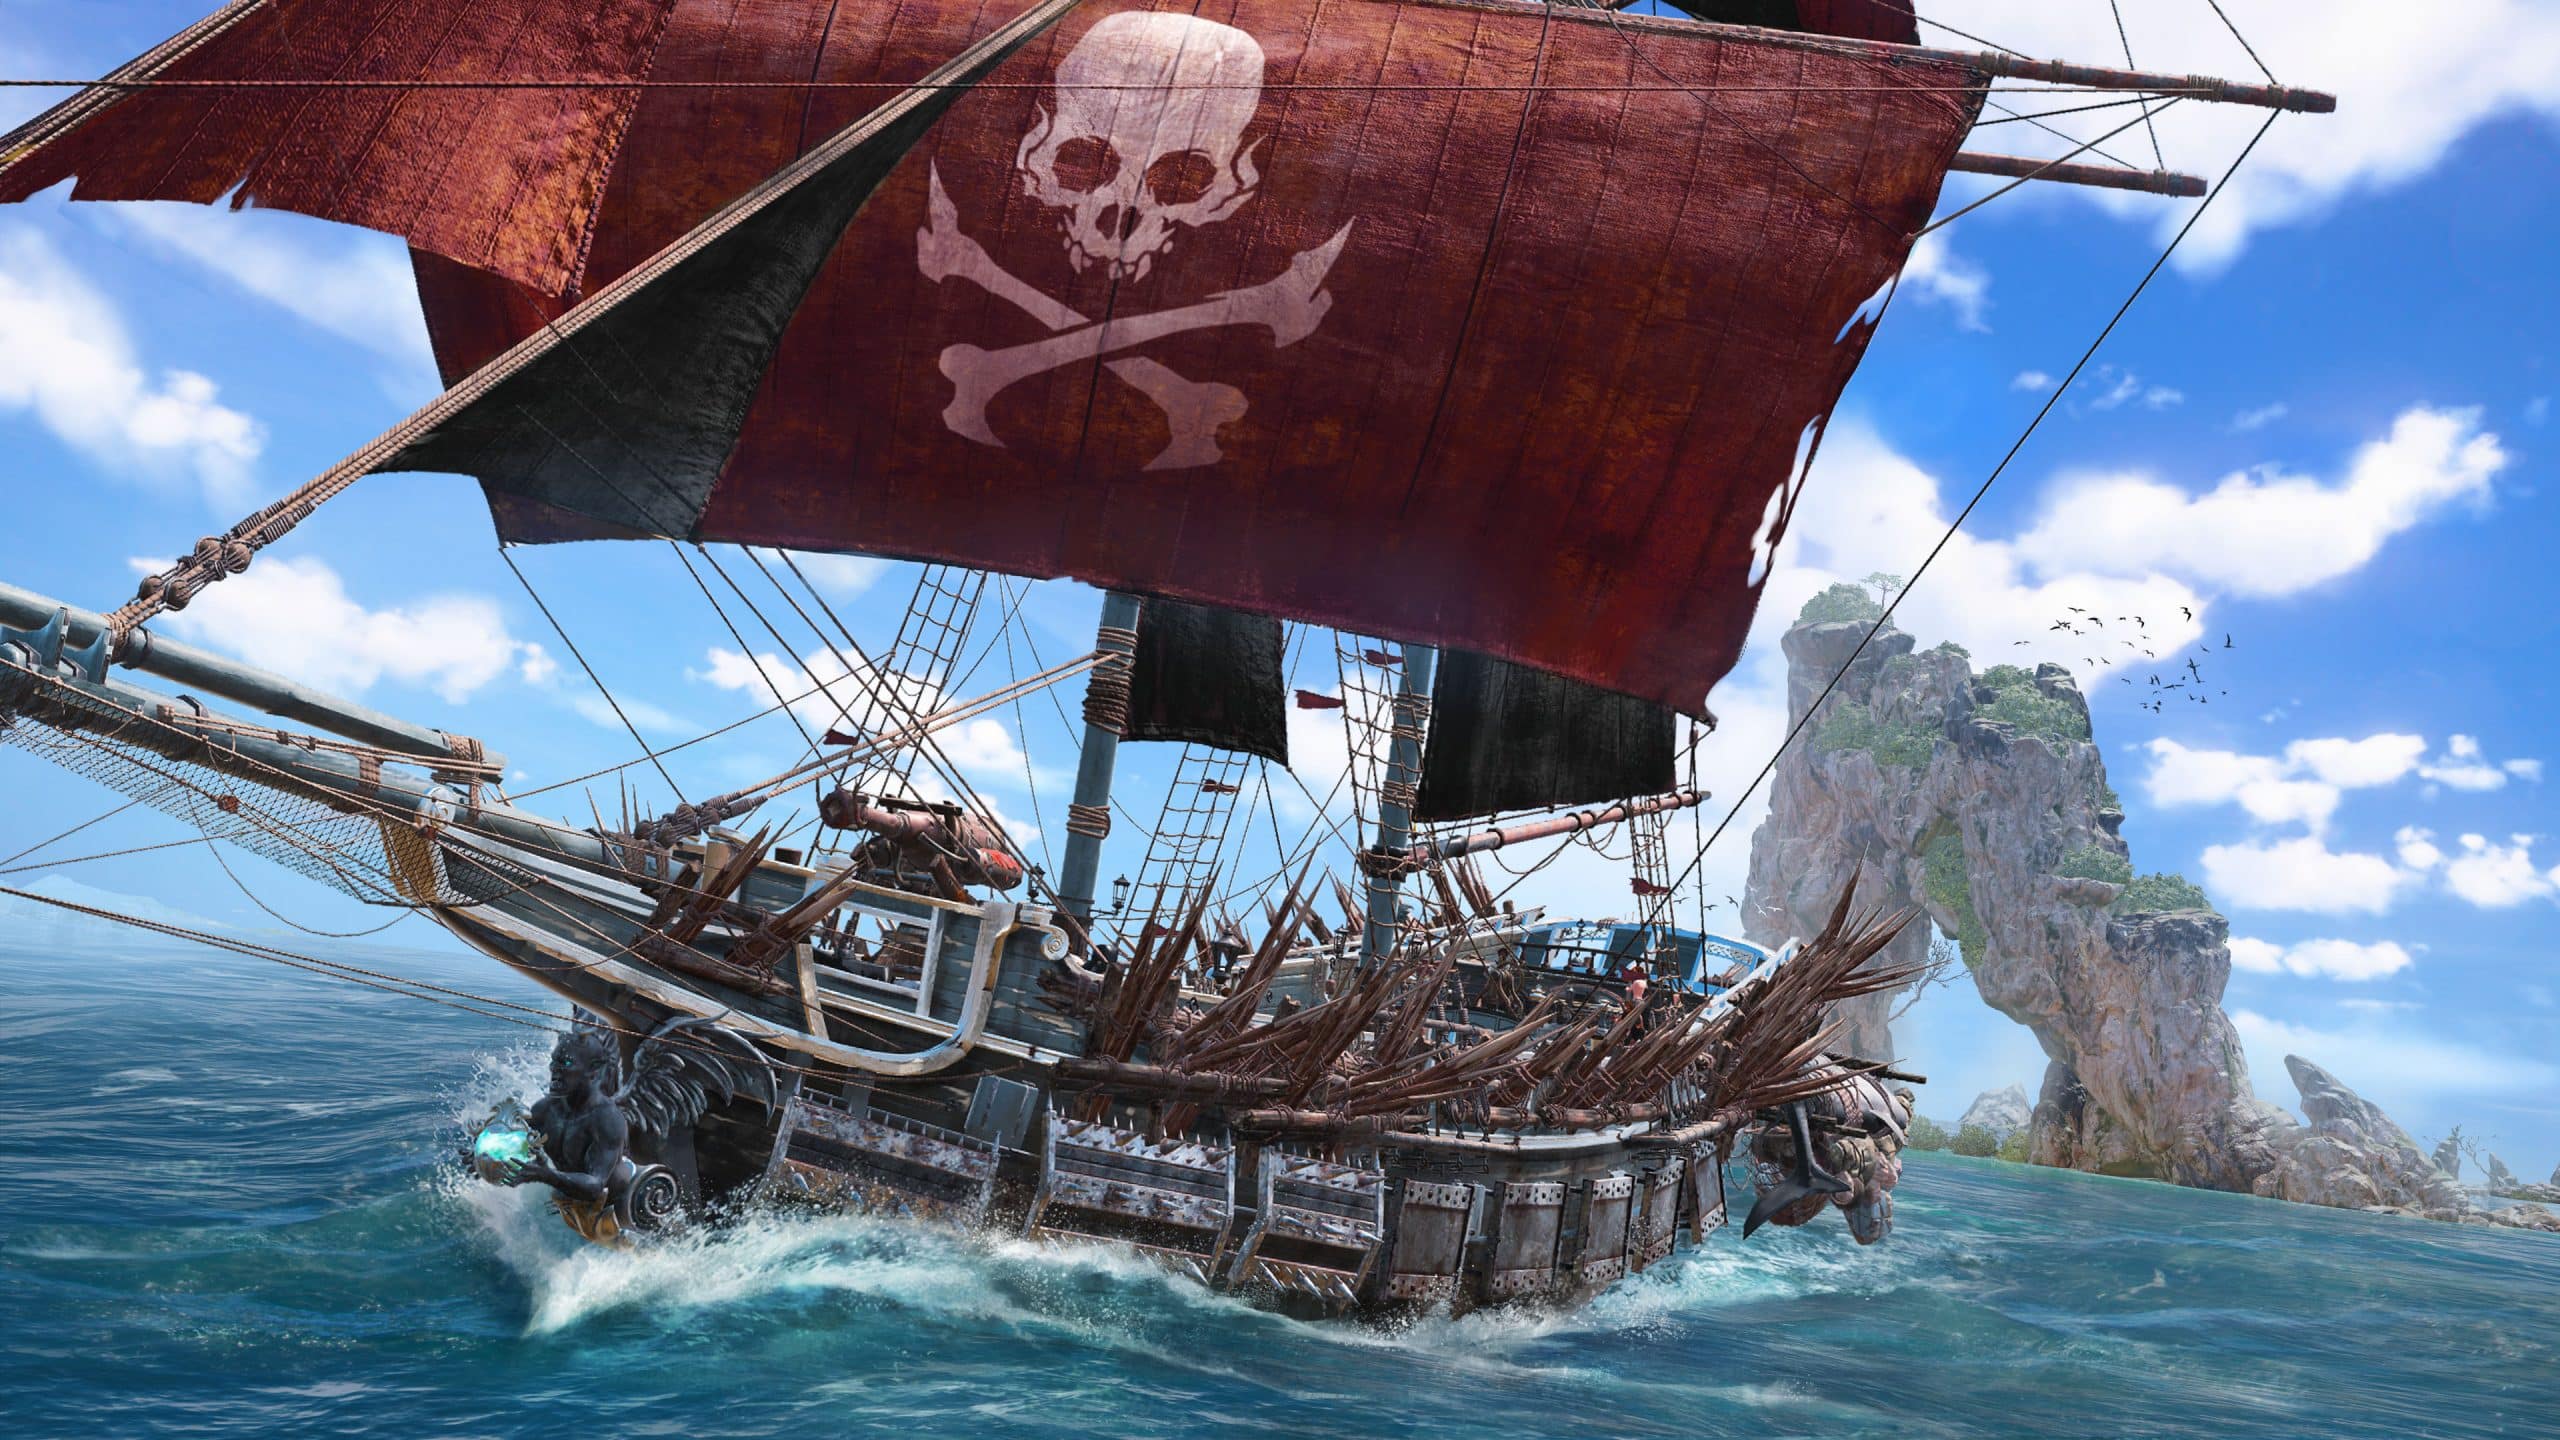 Skull and Bones ship